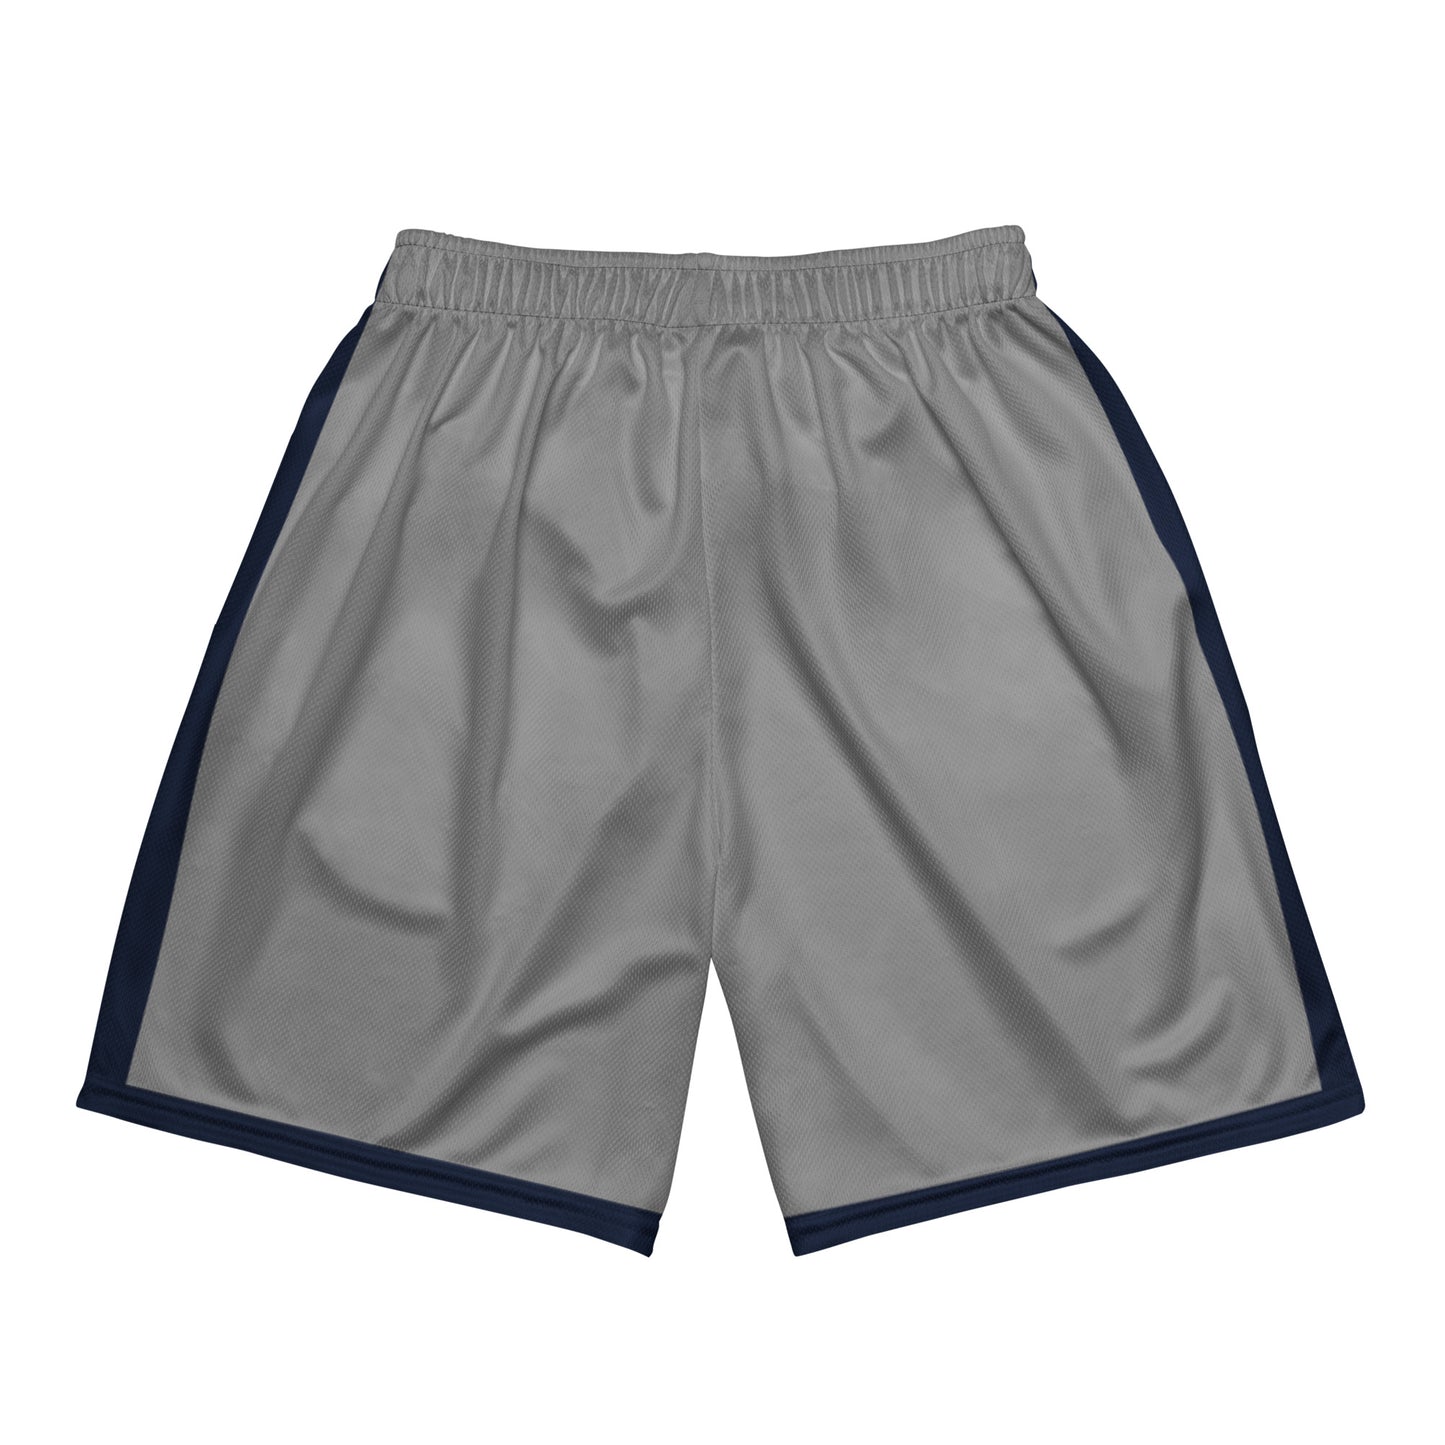 DoUPray mesh shorts (UConn)